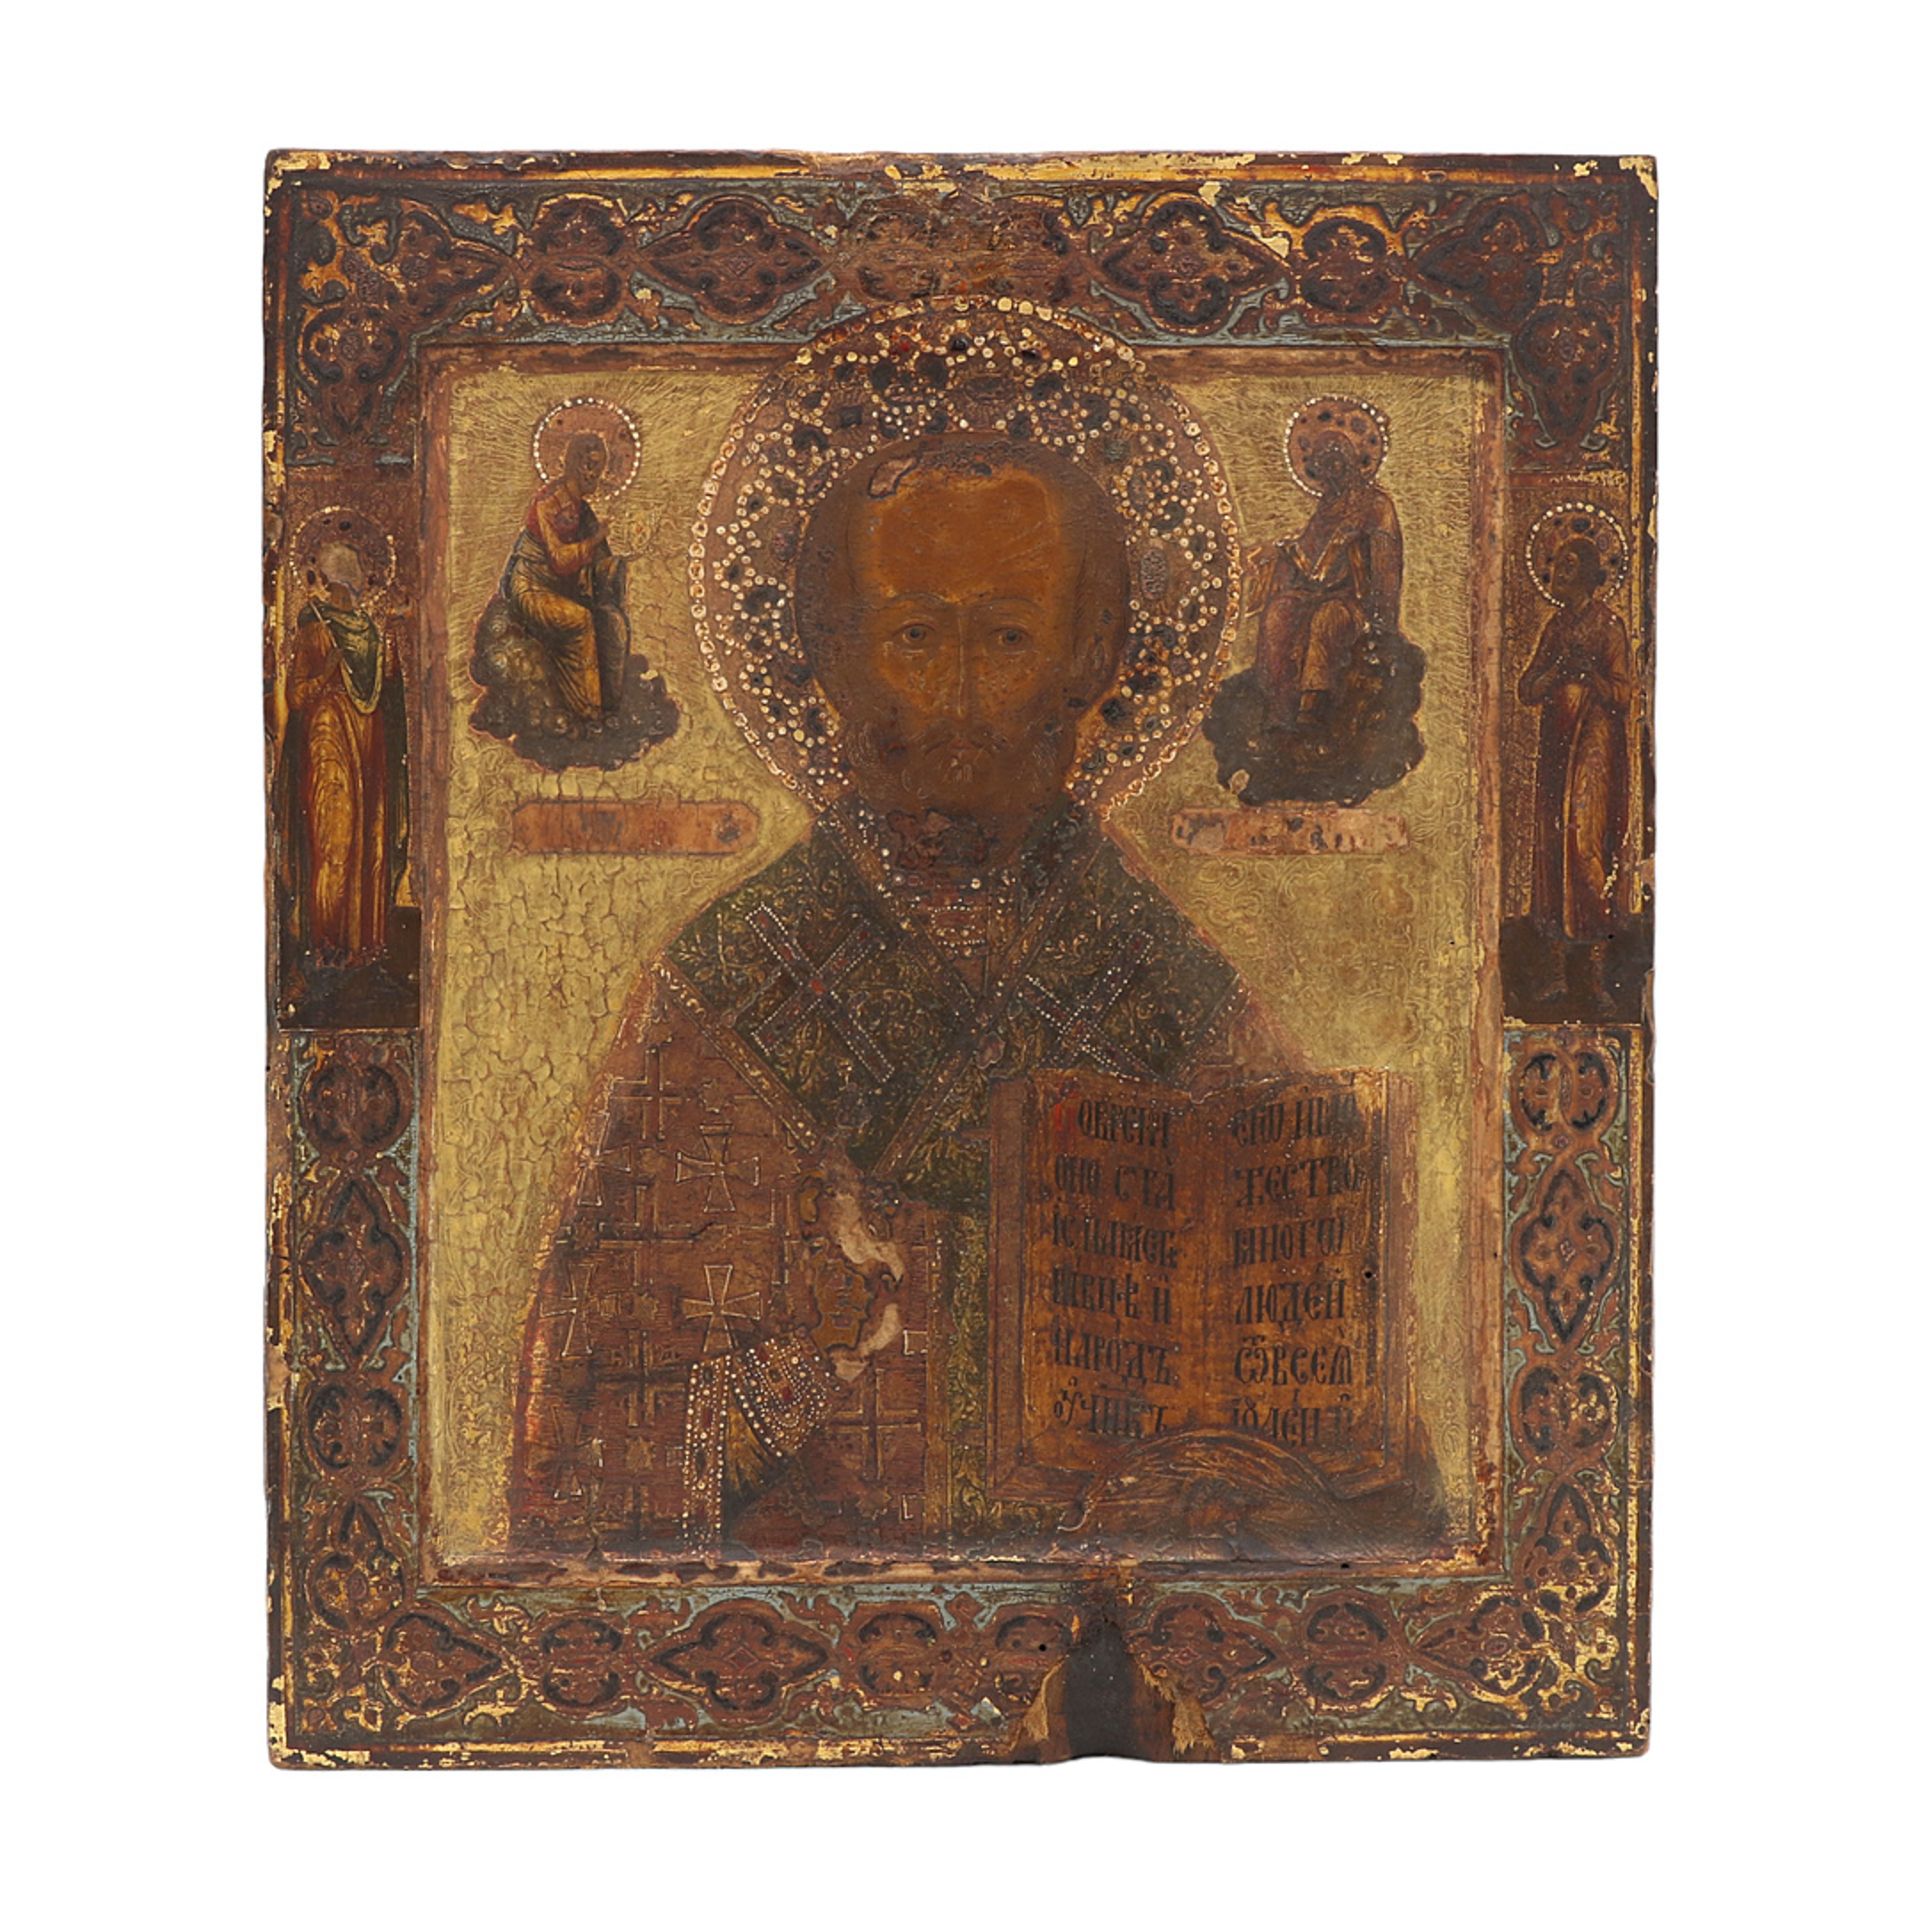 Icon of Saint Nicholas, Georgia/Caucasus region, end of 18th century